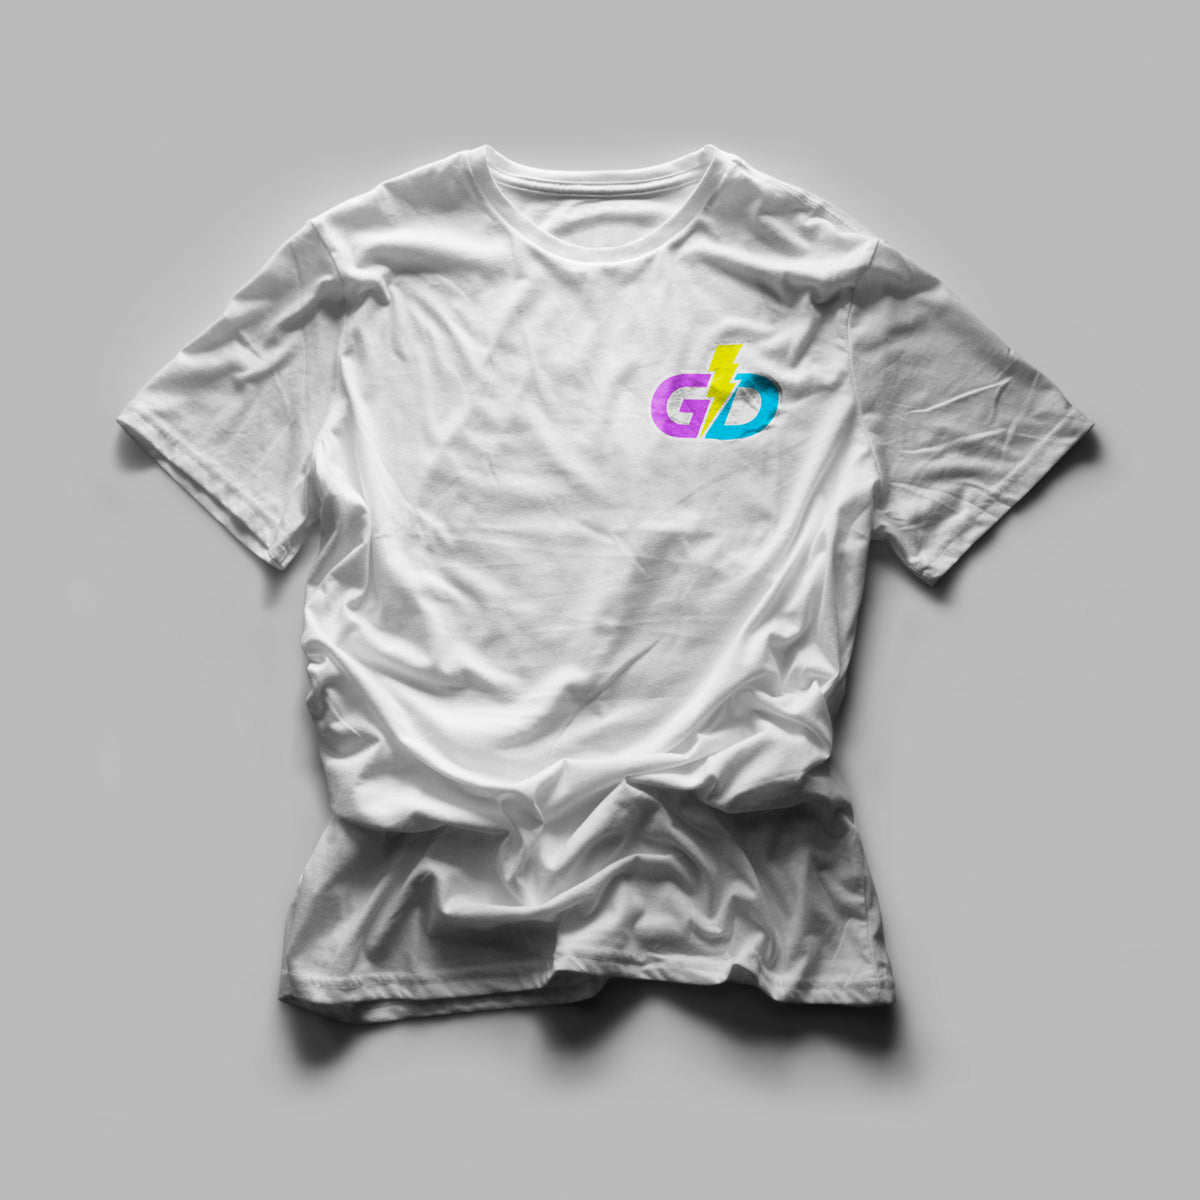 Gawddamm_it - GD Tshirt Embroidered